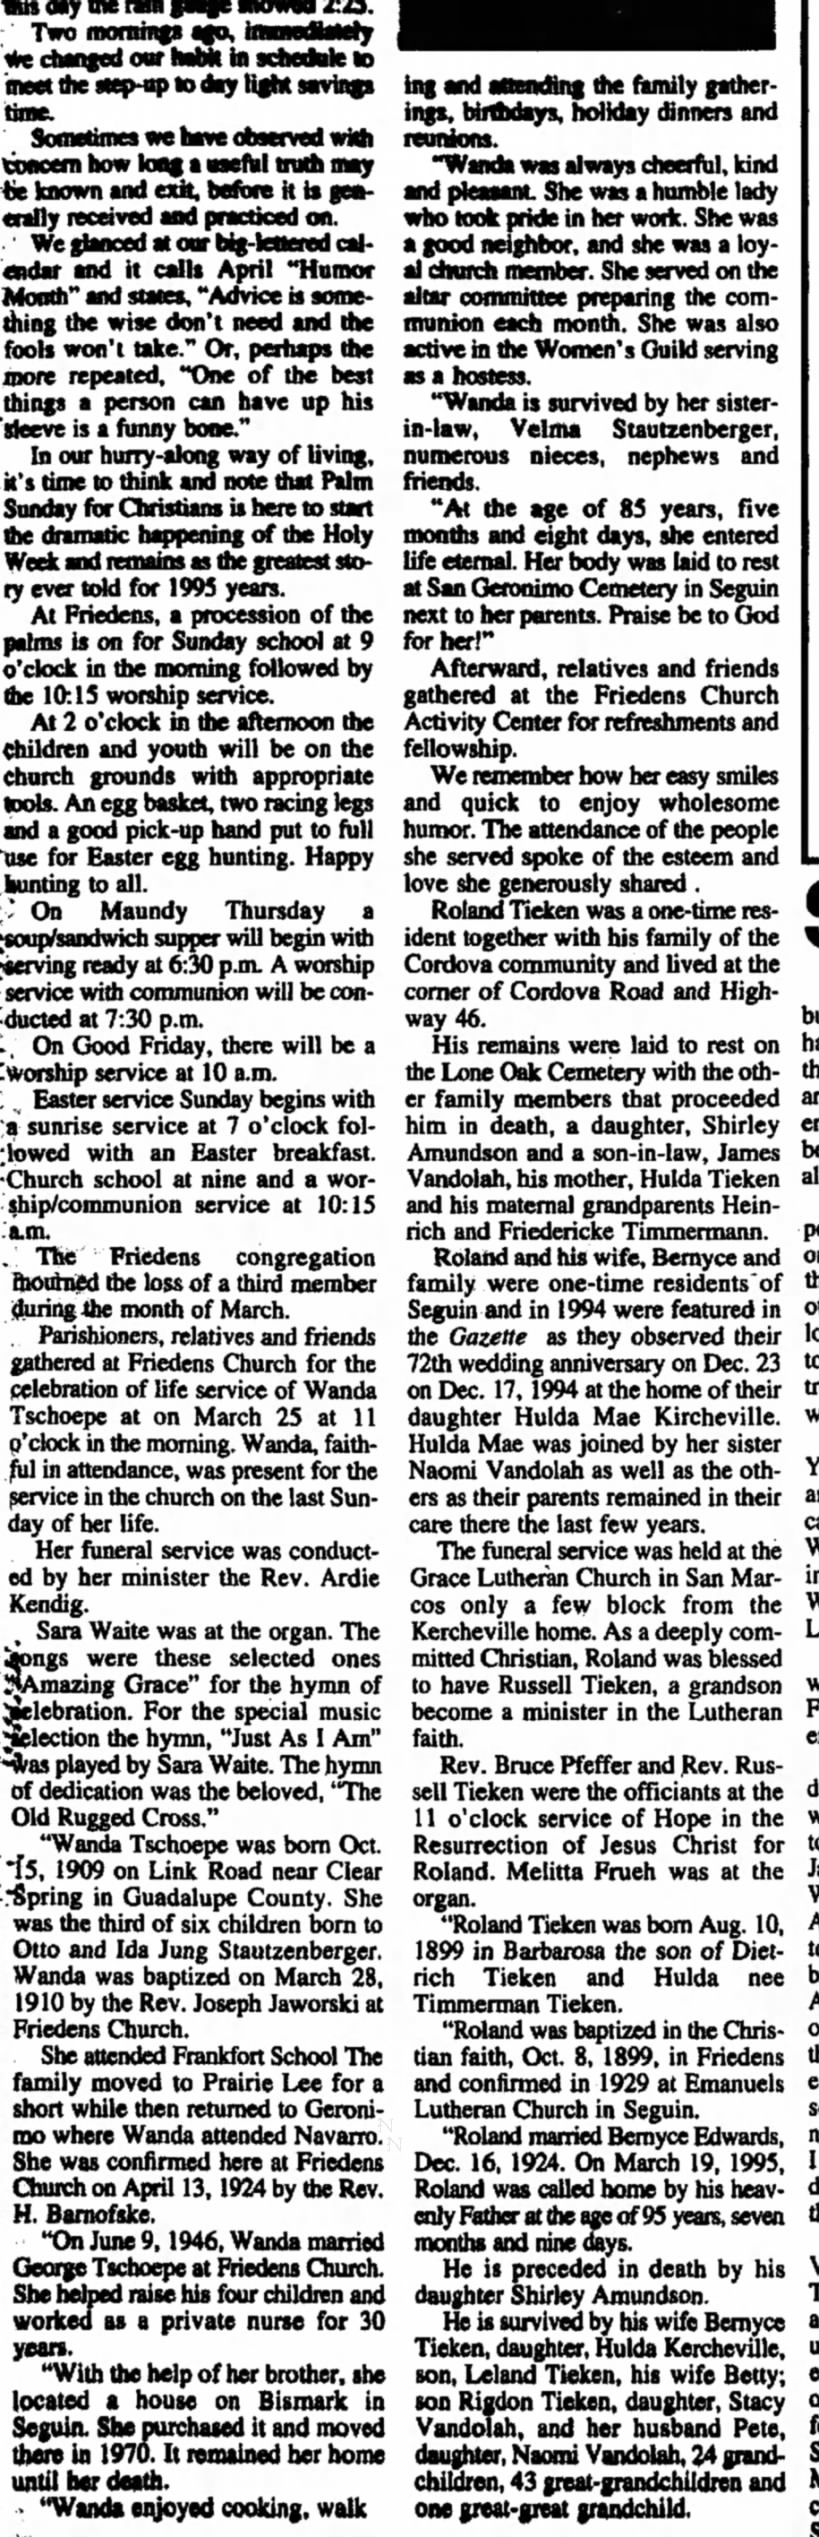 Wanda Stautzenberger Tschoepe Obituary
Seguin Gazette  06 Apr 1995